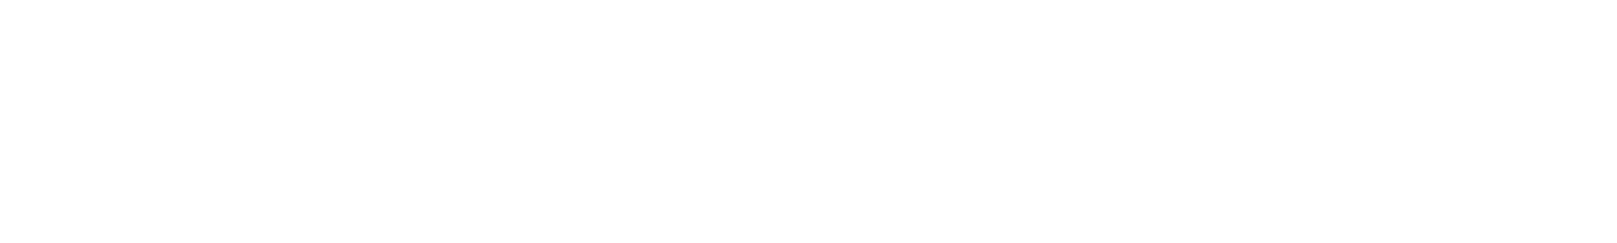 ETC 6 Meridian logo grand pour les fonds sombres (PNG transparent)